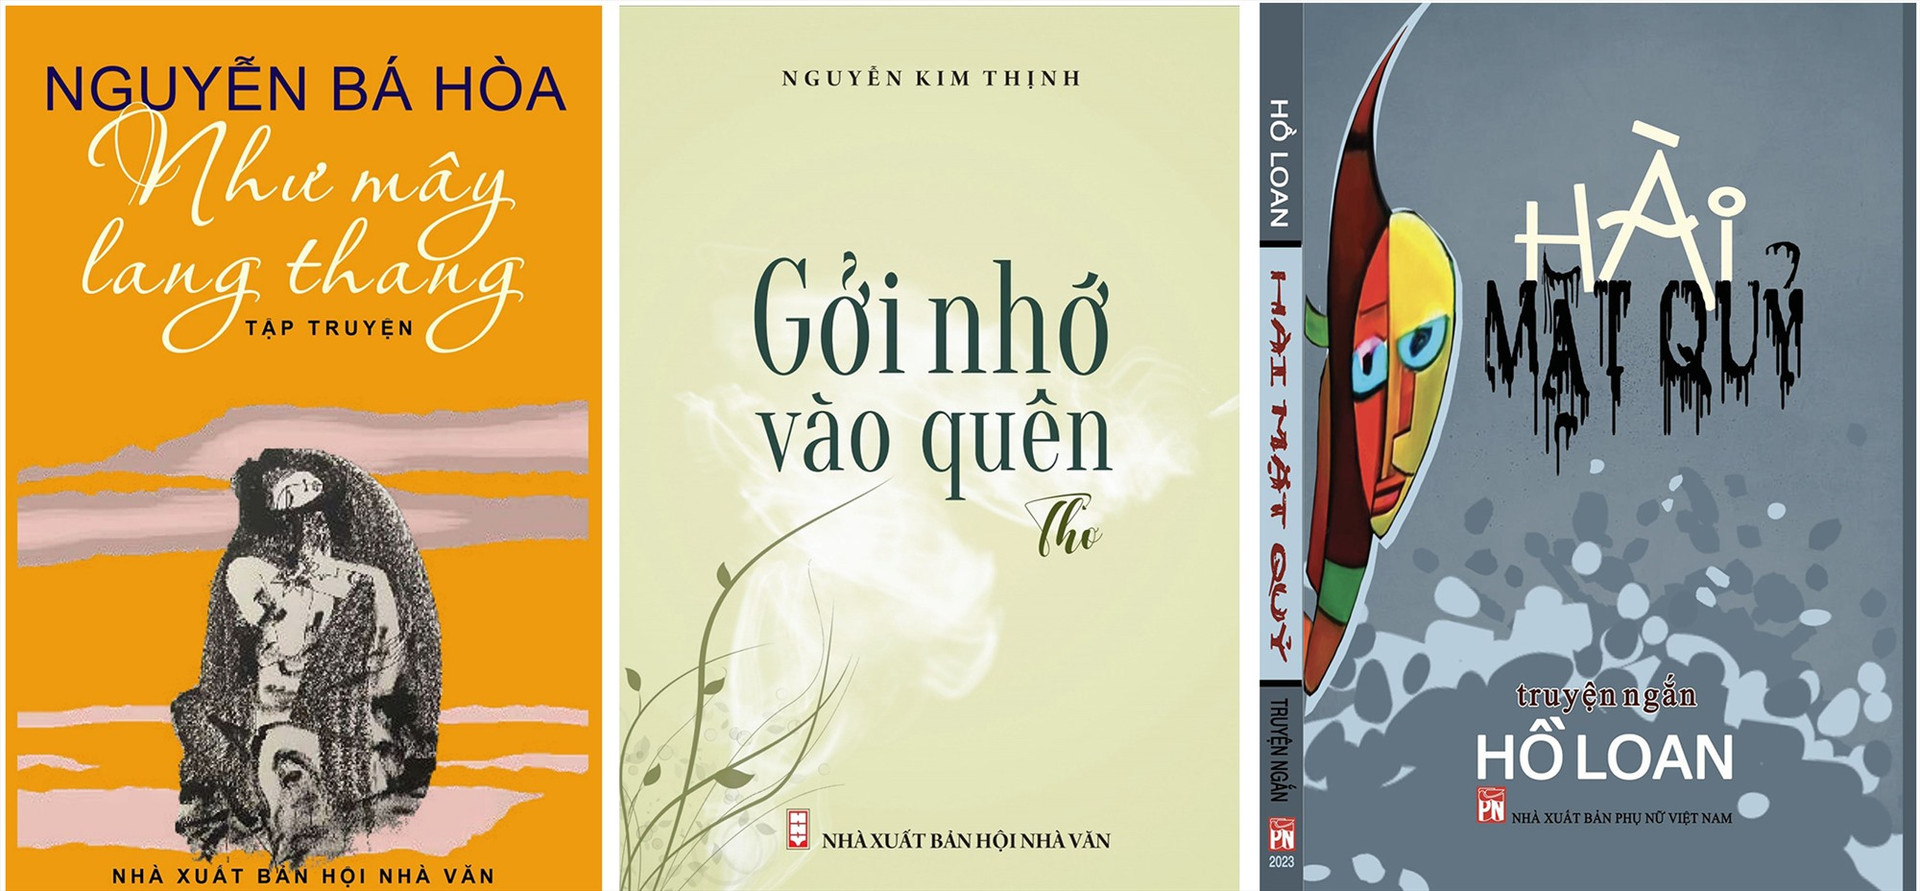 Ba cuốn sách đầu tiên tham gia chính sách hỗ trợ sáng tạo, công bố tác phẩm, công trình văn học, nghiên cứu về Quảng Nam năm 2023 sắp được xuất bản.